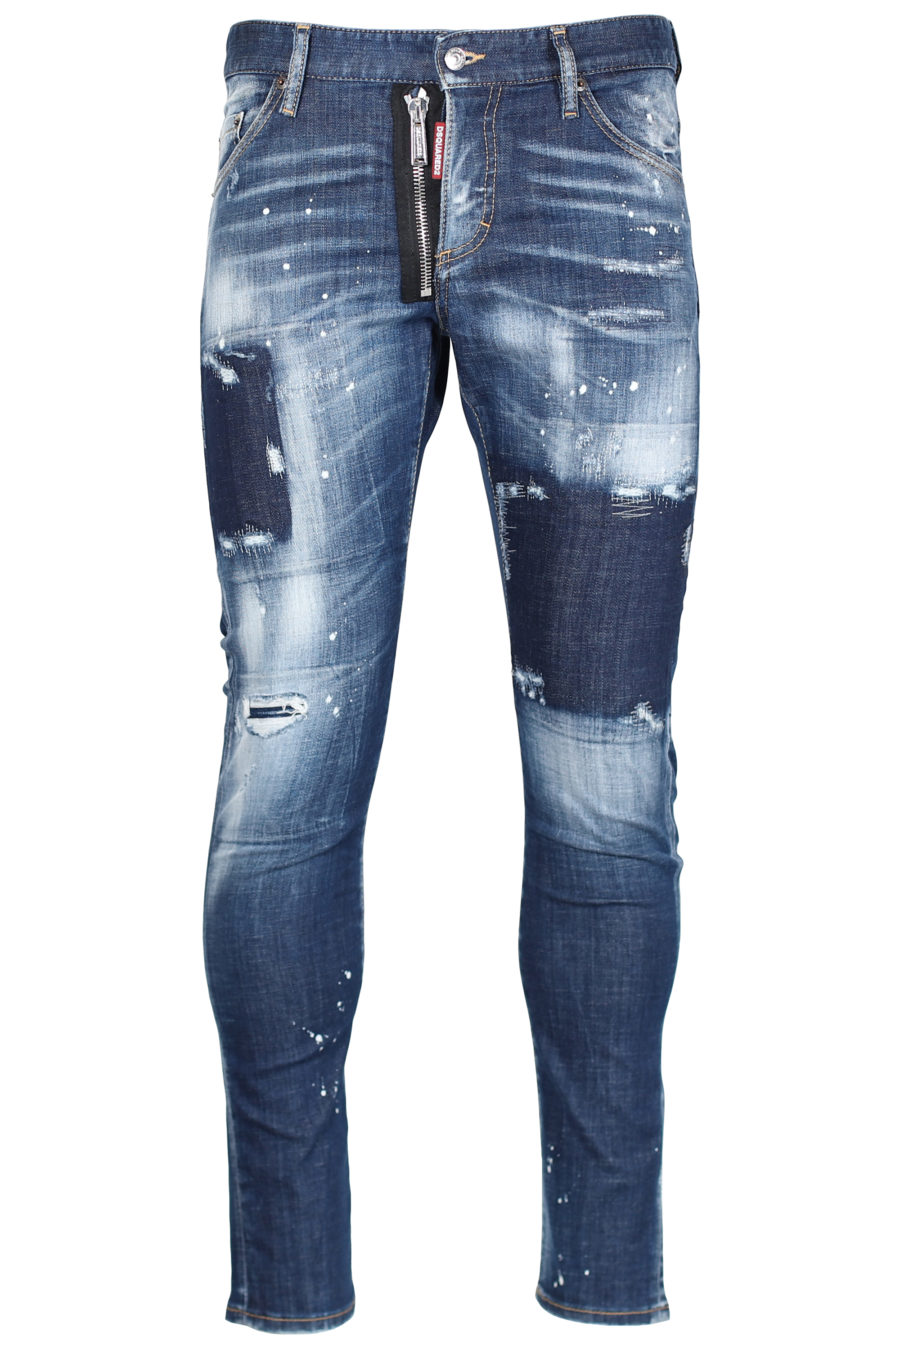 Jeans "Sexy twist jean" bleu avec fermeture éclair - IMG 2449